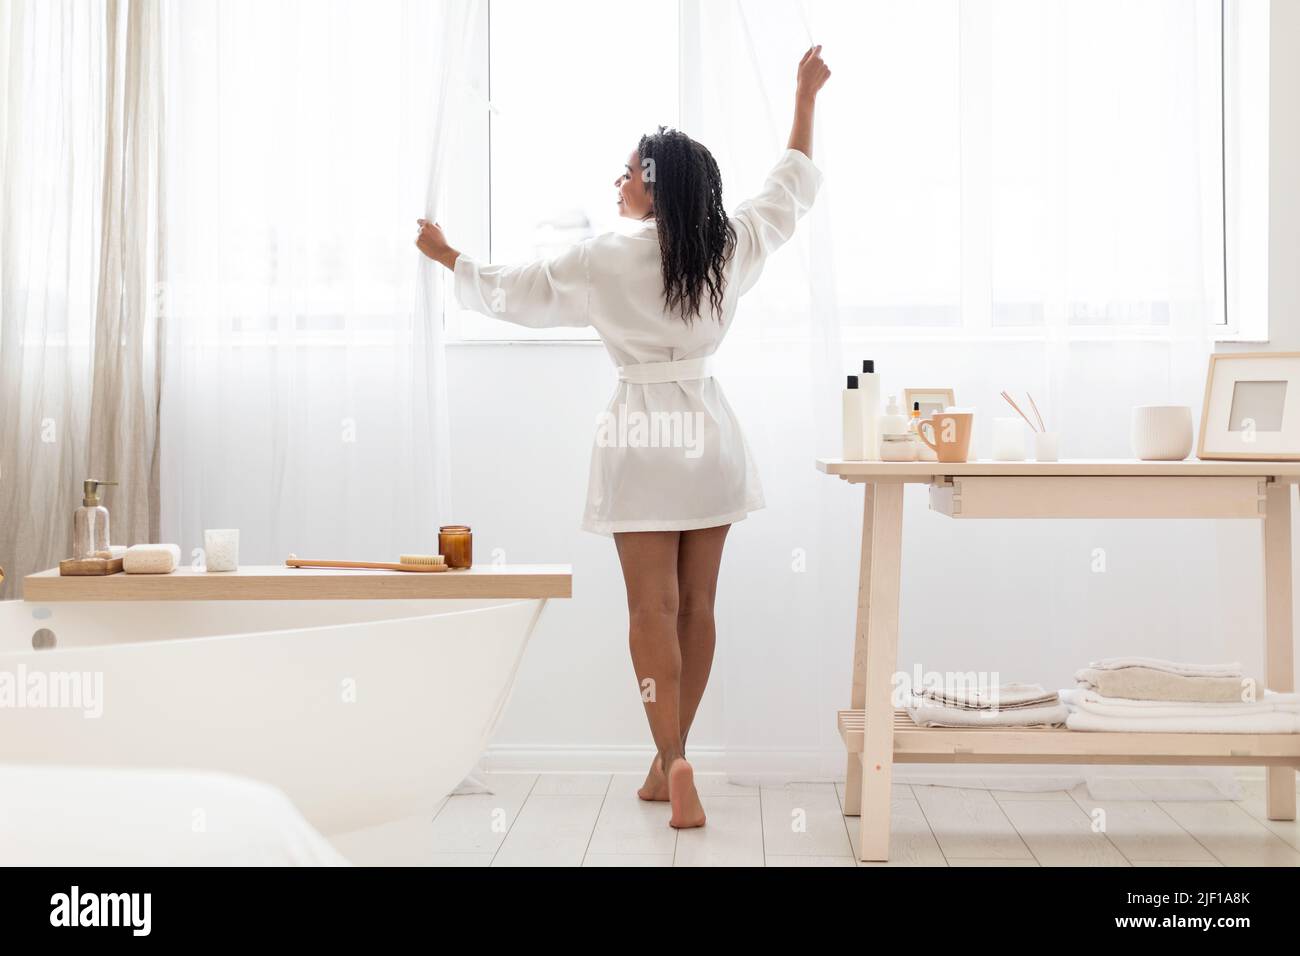 Morgendliche Routine. Glückliche schwarze Frau in Seidengewand, die Vorhänge im Badezimmer öffnen Stockfoto